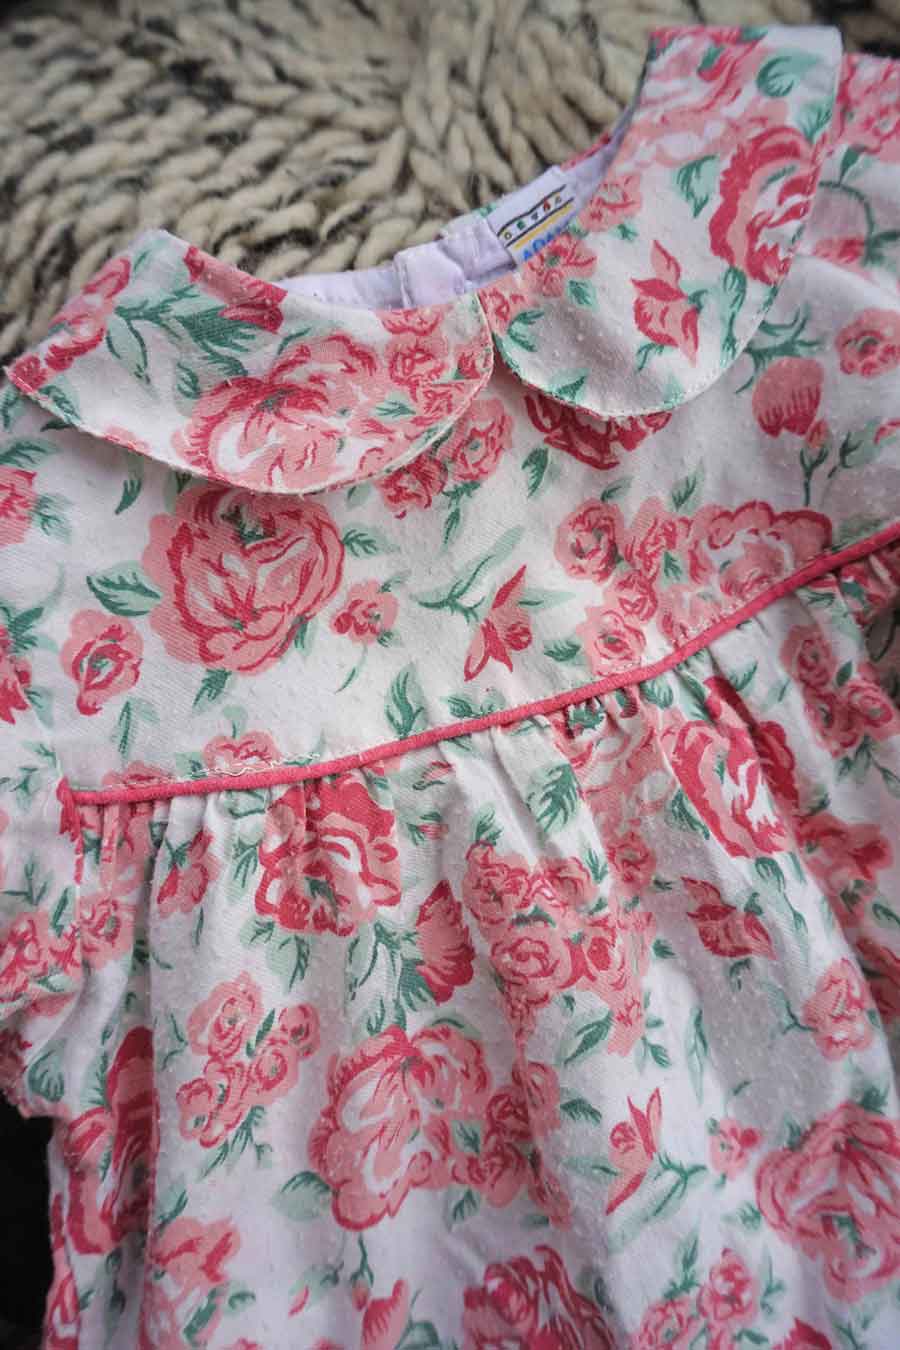 Vintage Baby Girls Pink Floral Dress - Girls Easter Dress - Ada's Attic Vintage